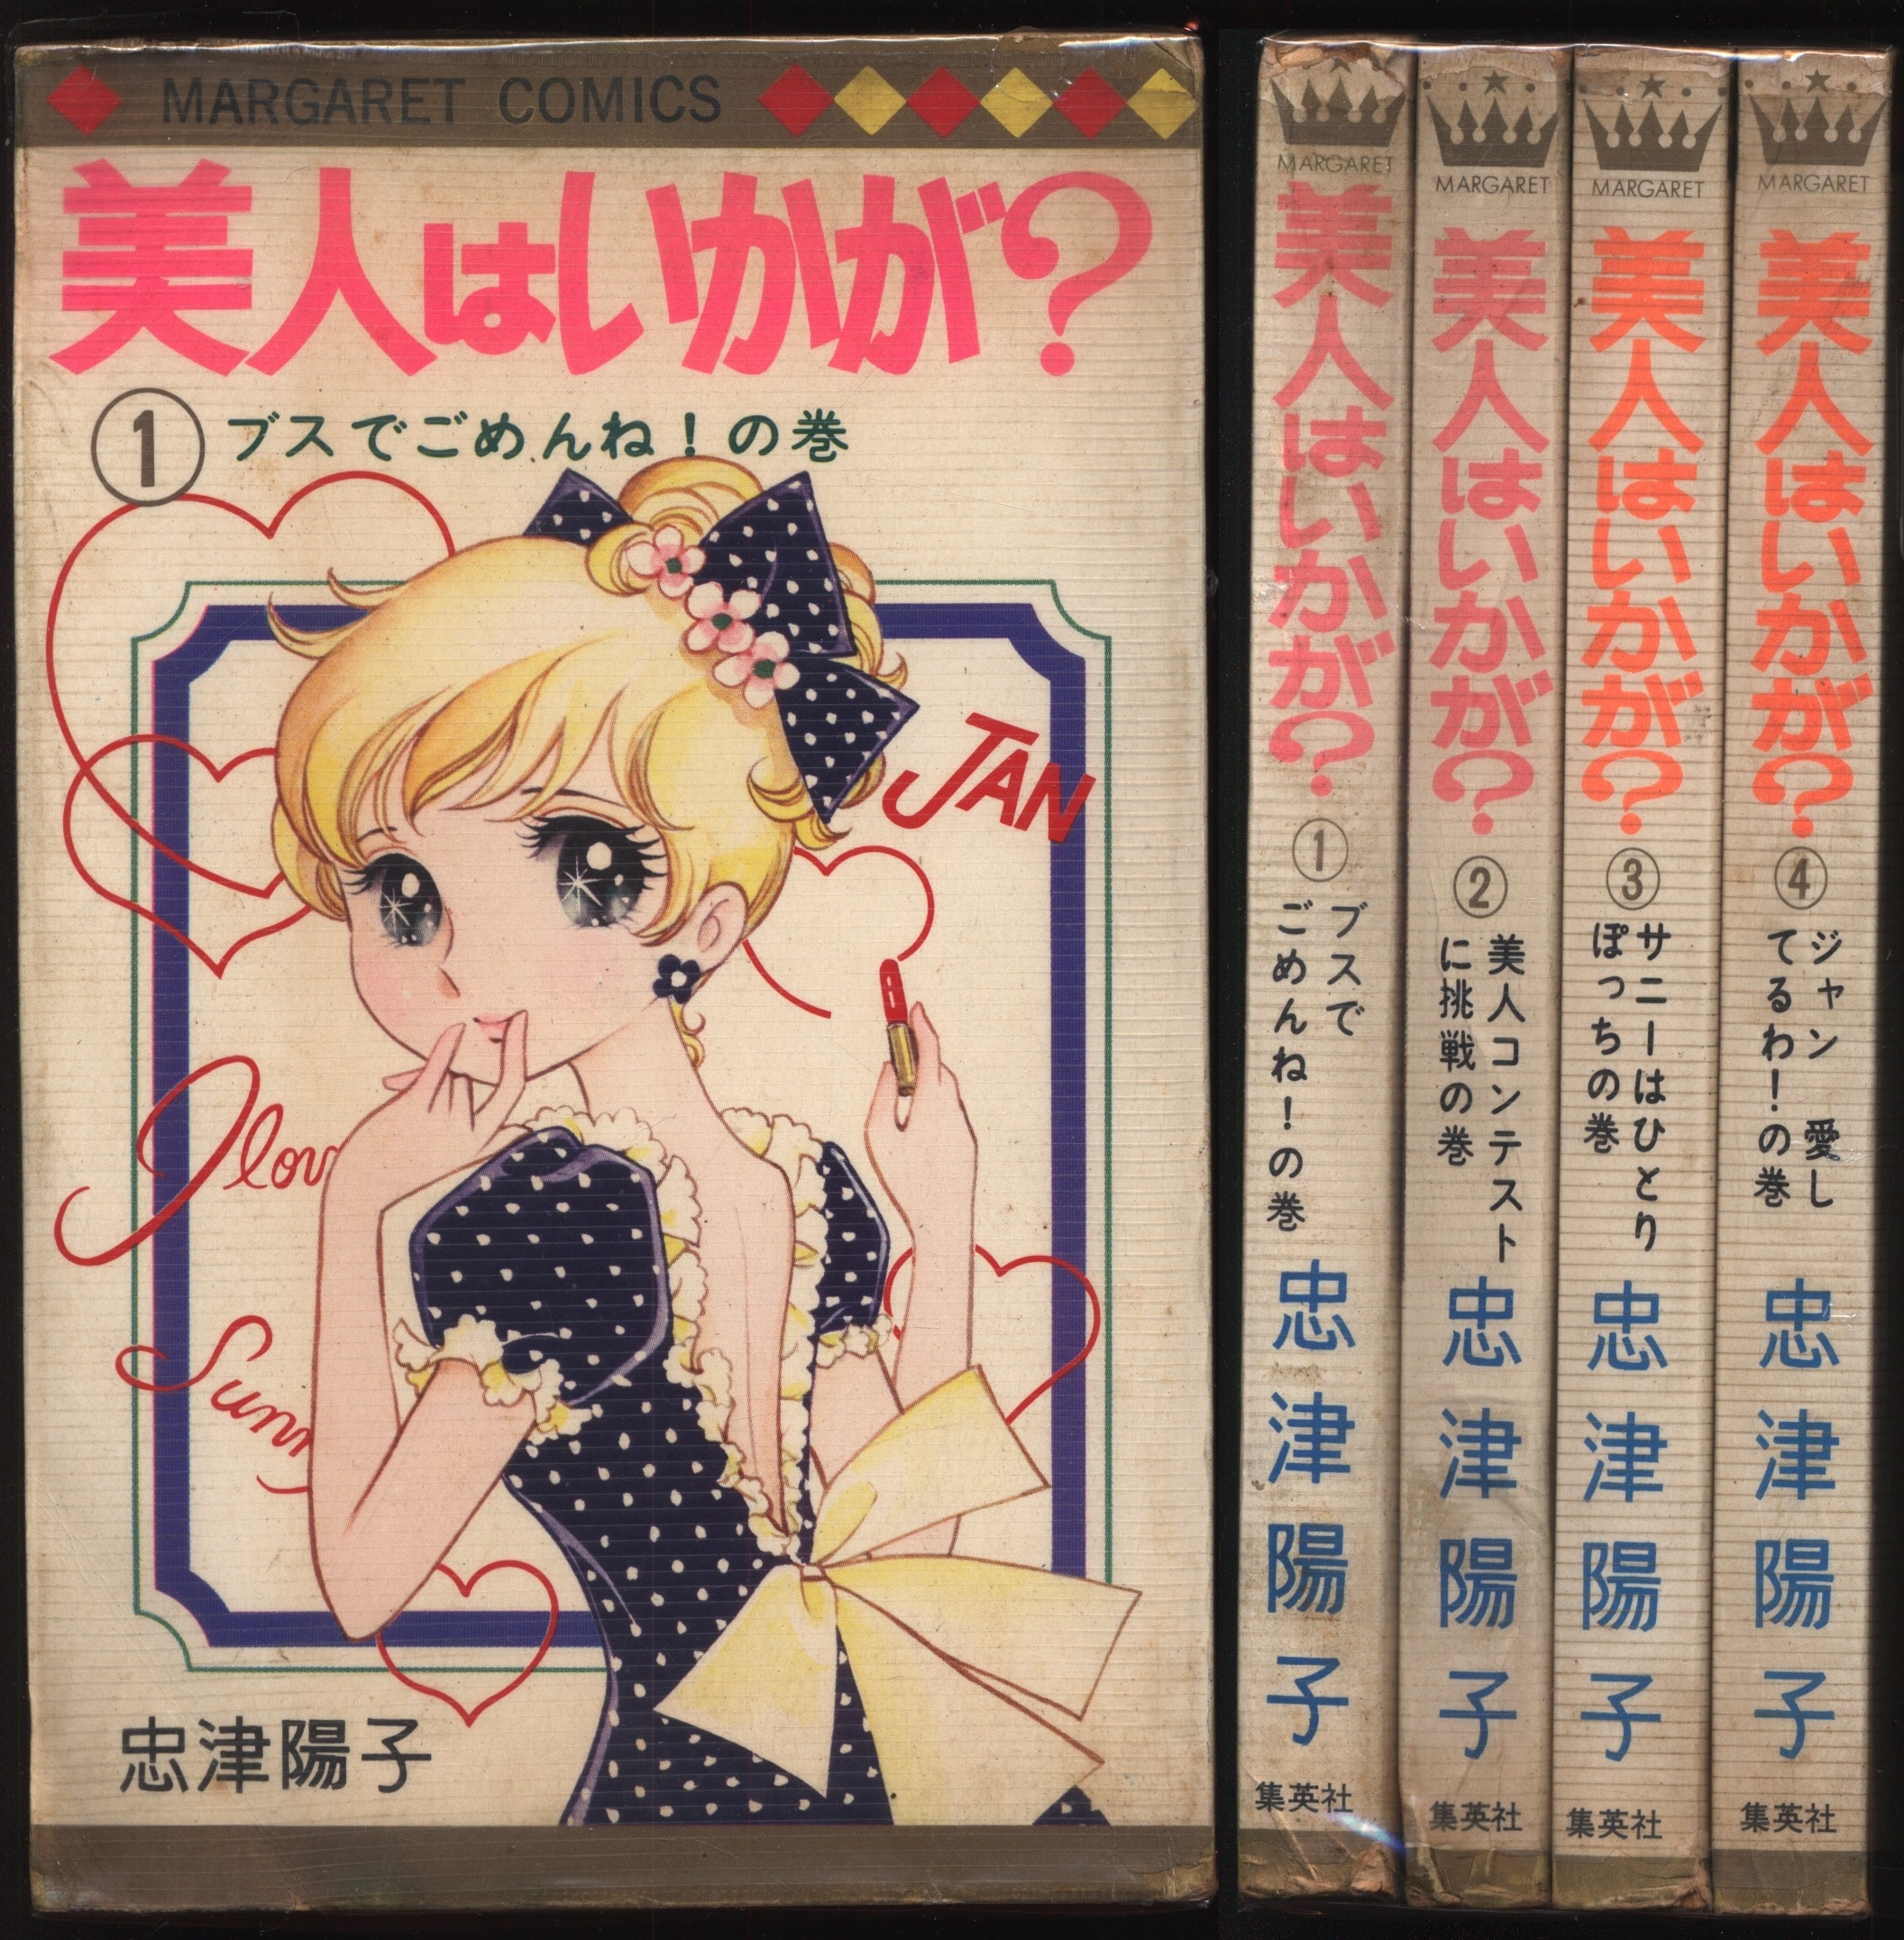 集英社 マーガレットコミックス 忠津陽子 美人はいかが ビニカバ付全4巻 初版セット まんだらけ Mandarake